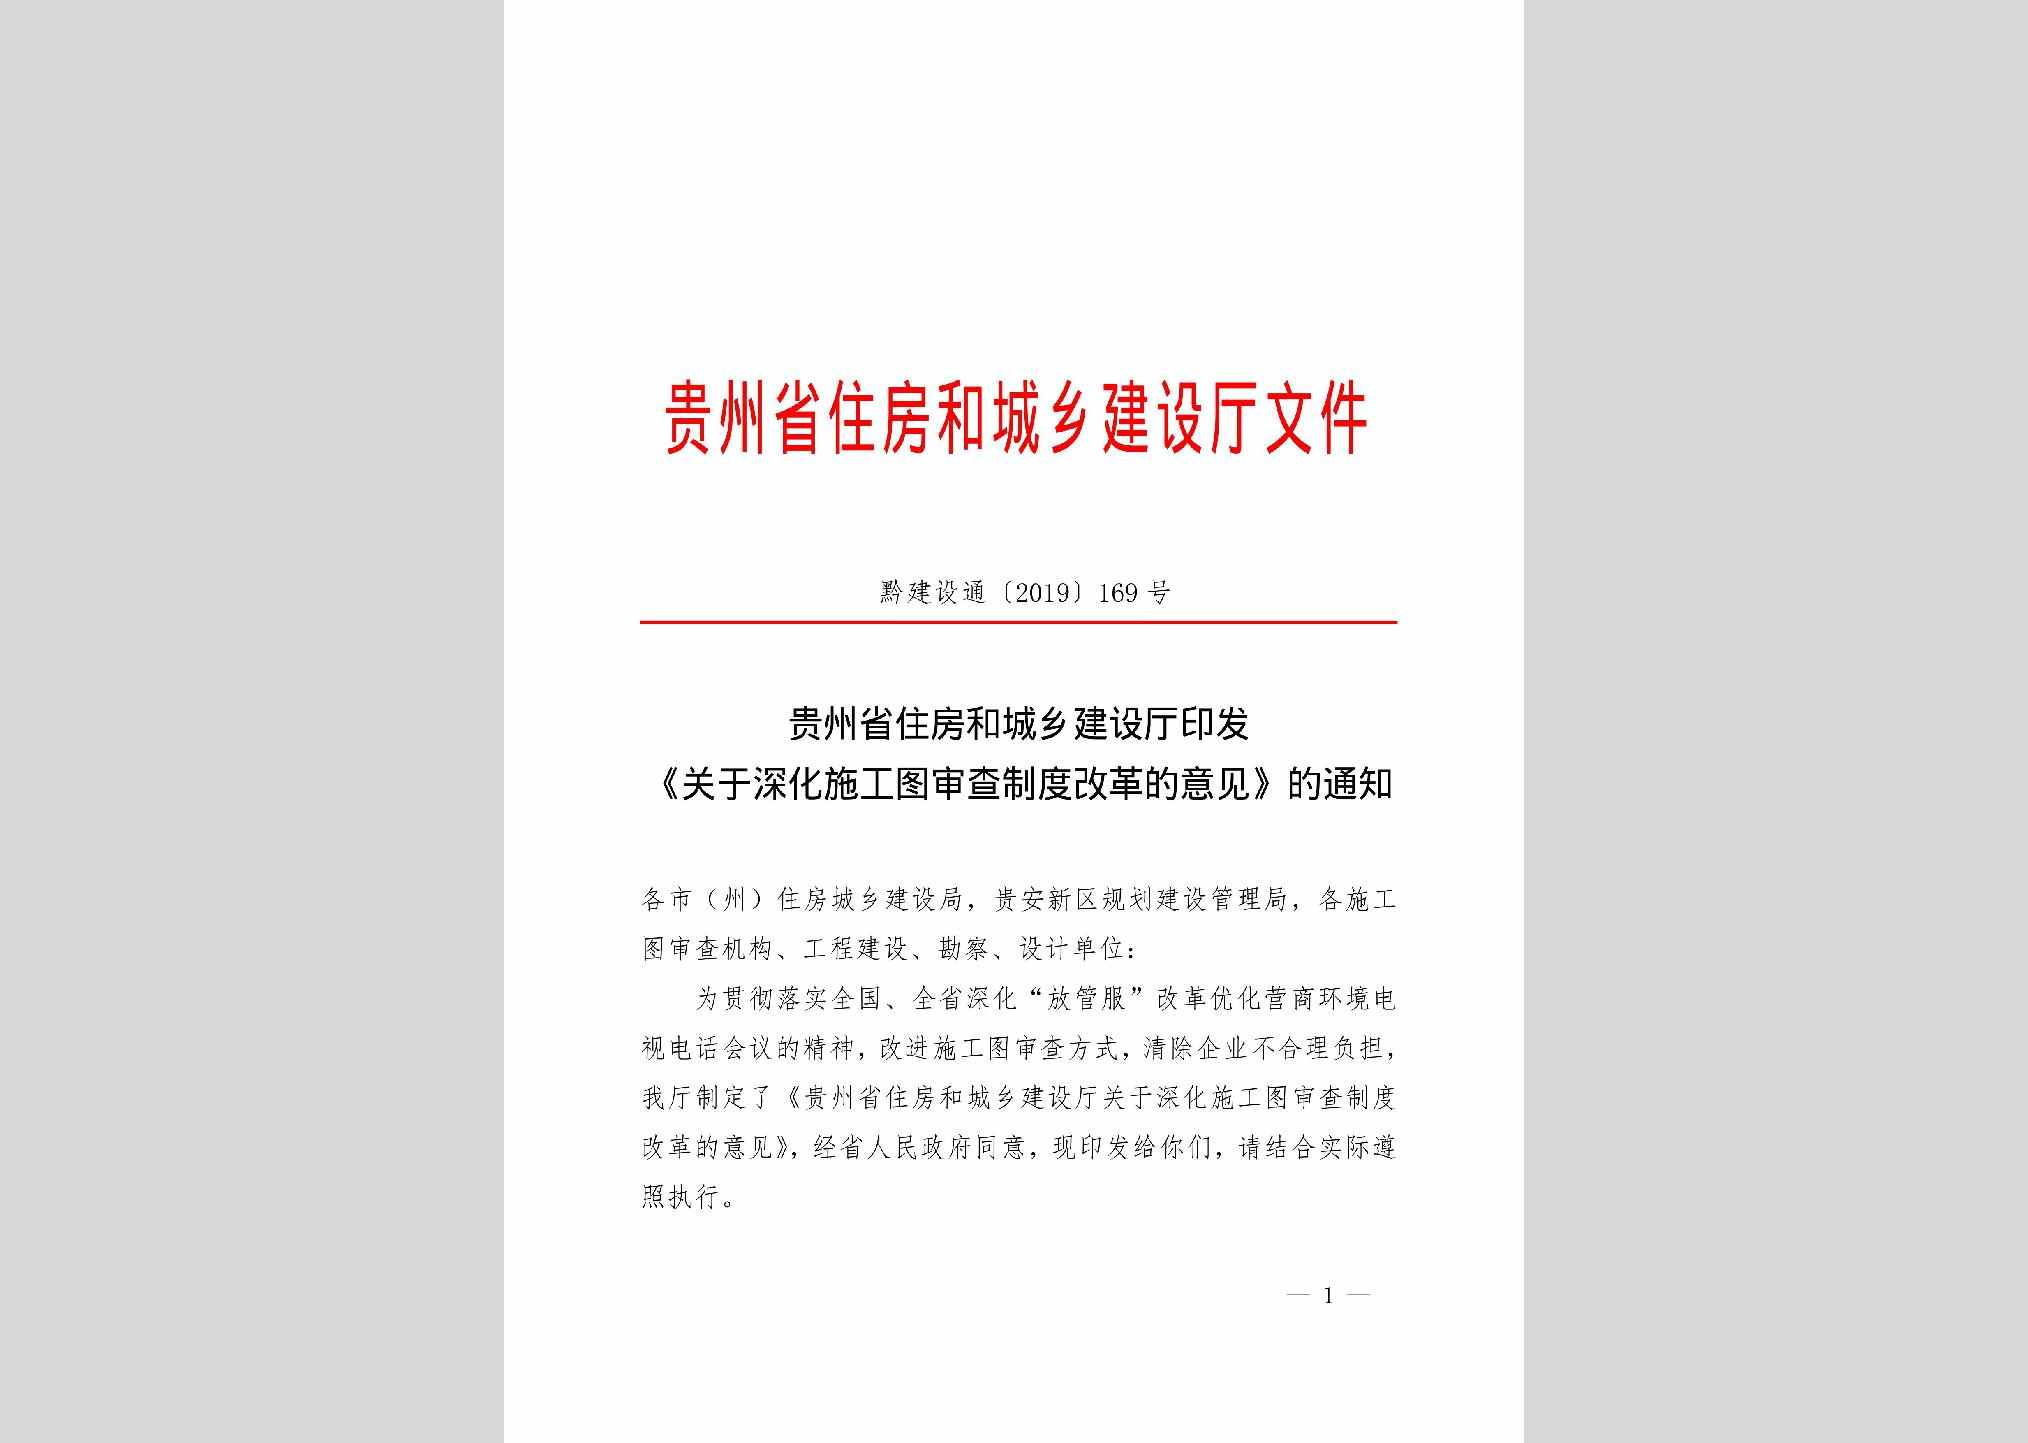 黔建设通[2019]169号：贵州省住房和城乡建设厅印发《关于深化施工图审查制度改革的意见》的通知